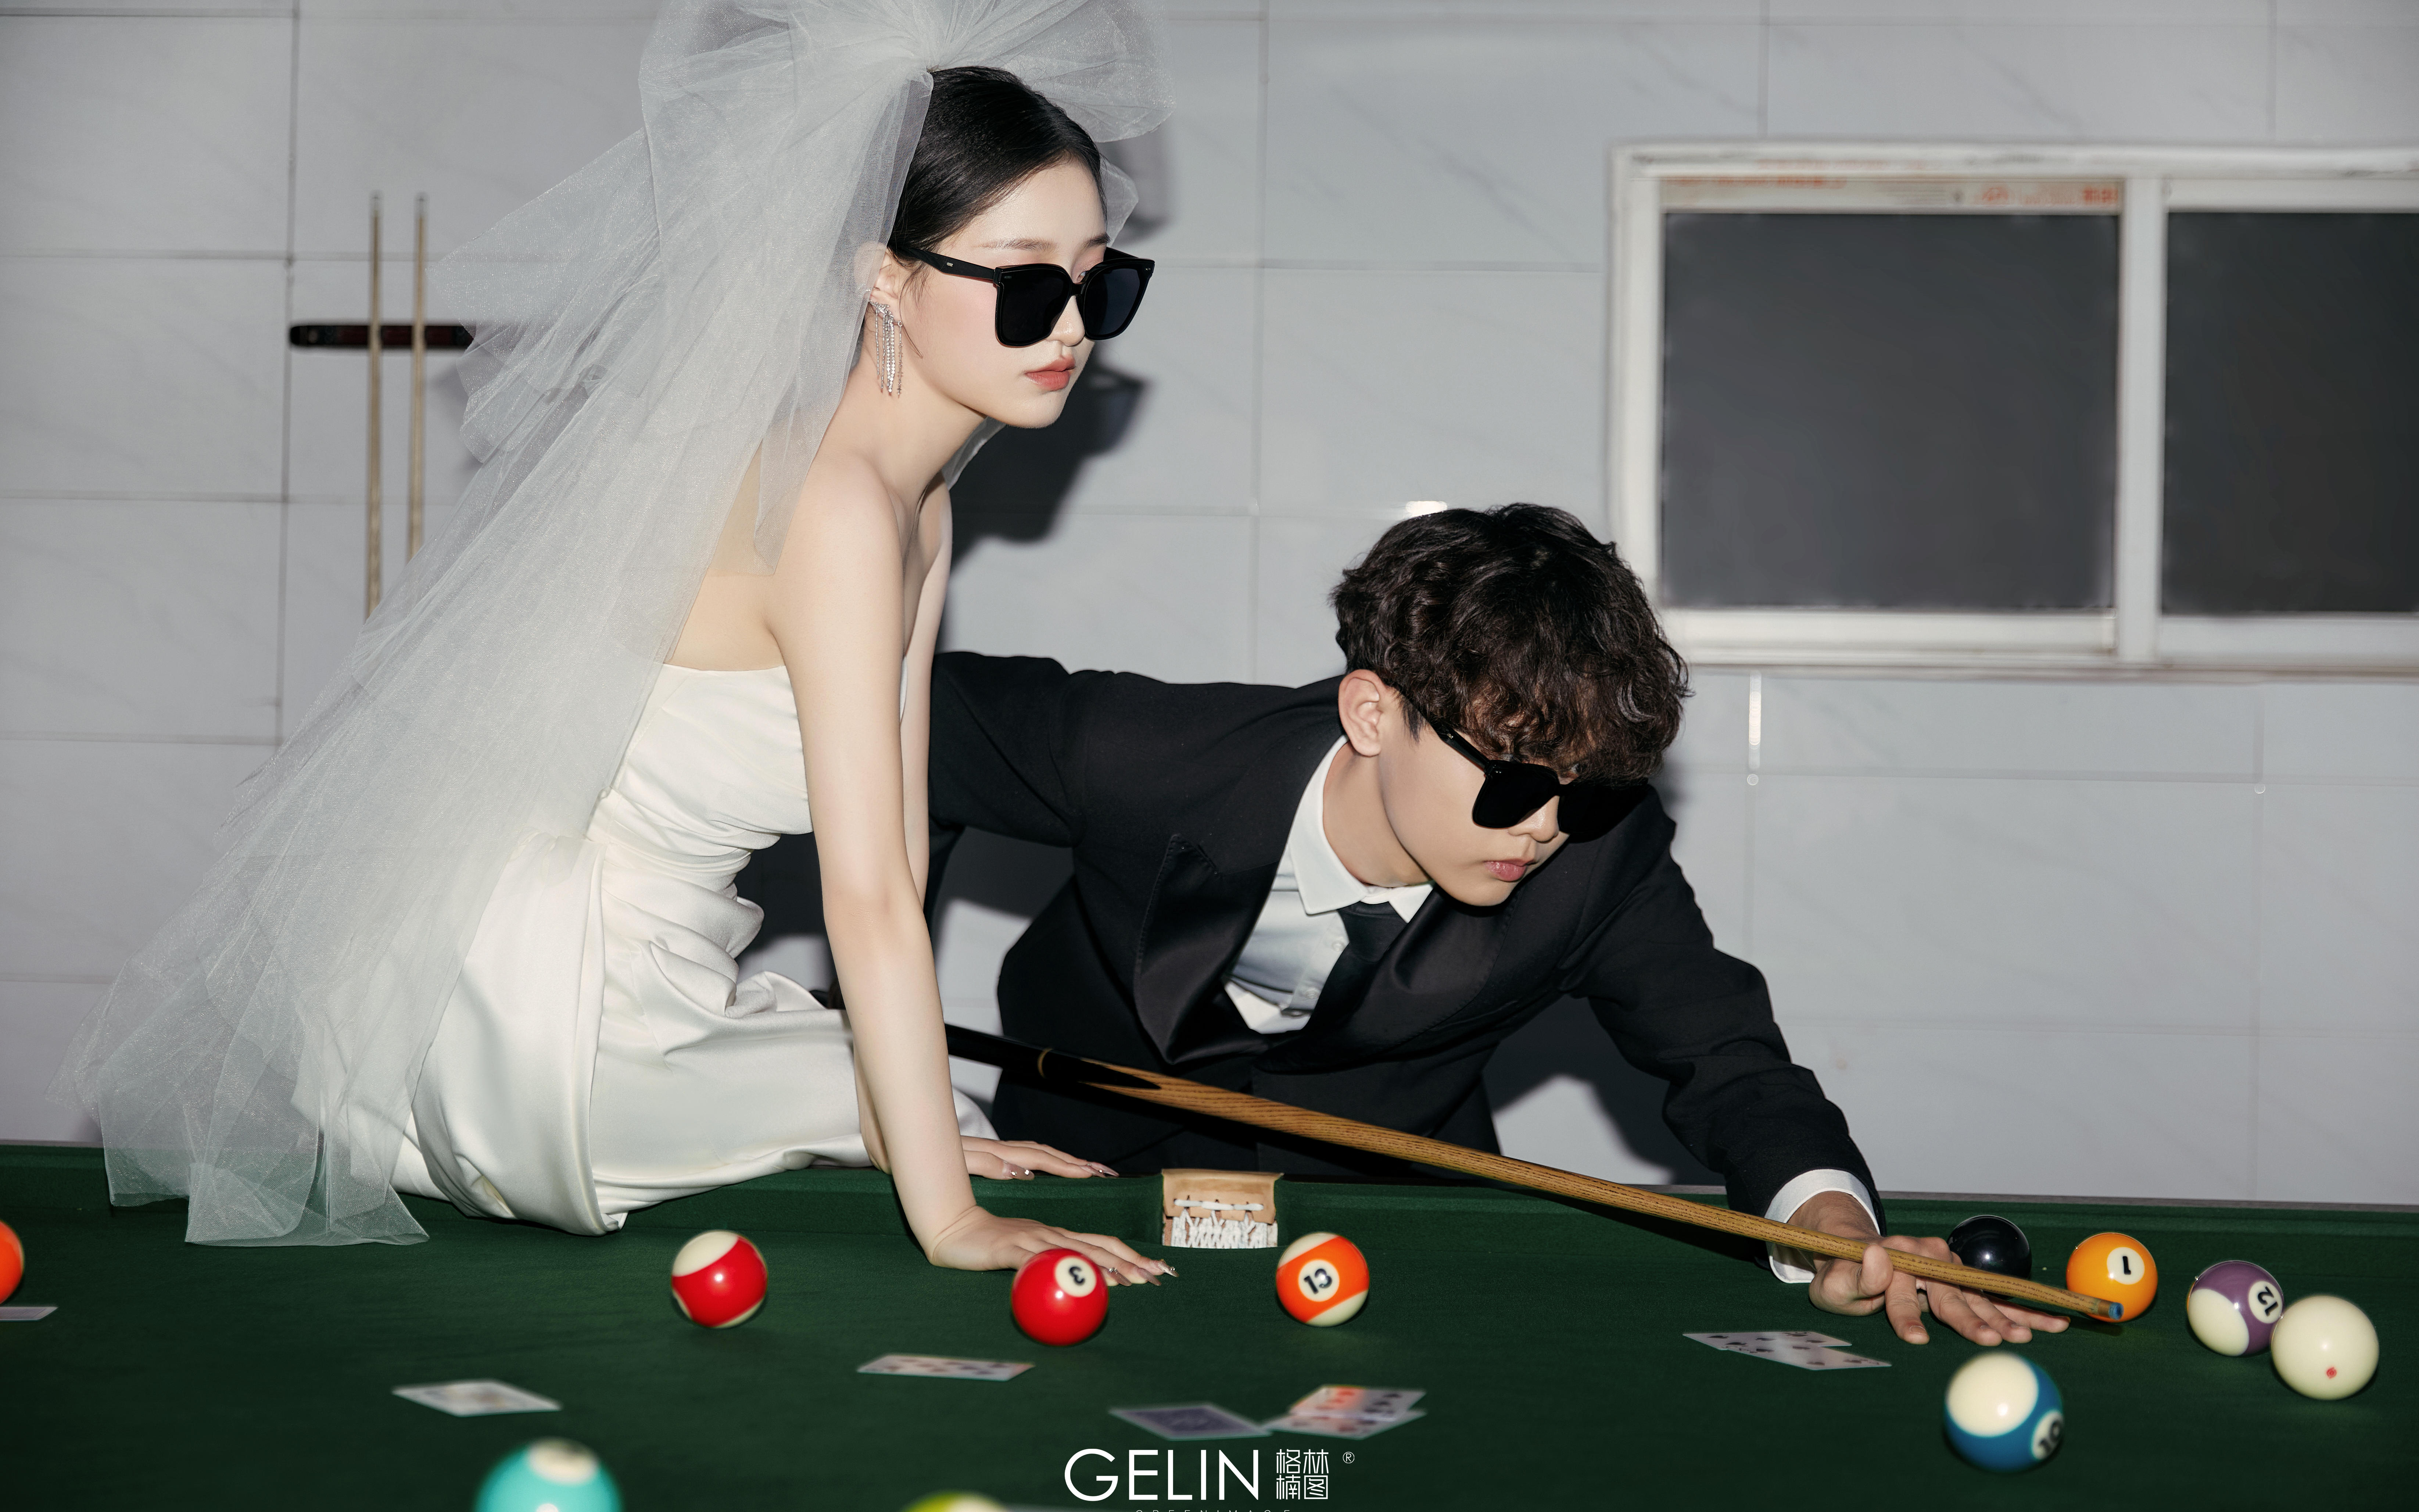 【格林楠图】桌球🎱婚纱照丨只打直球的爱情故事❤